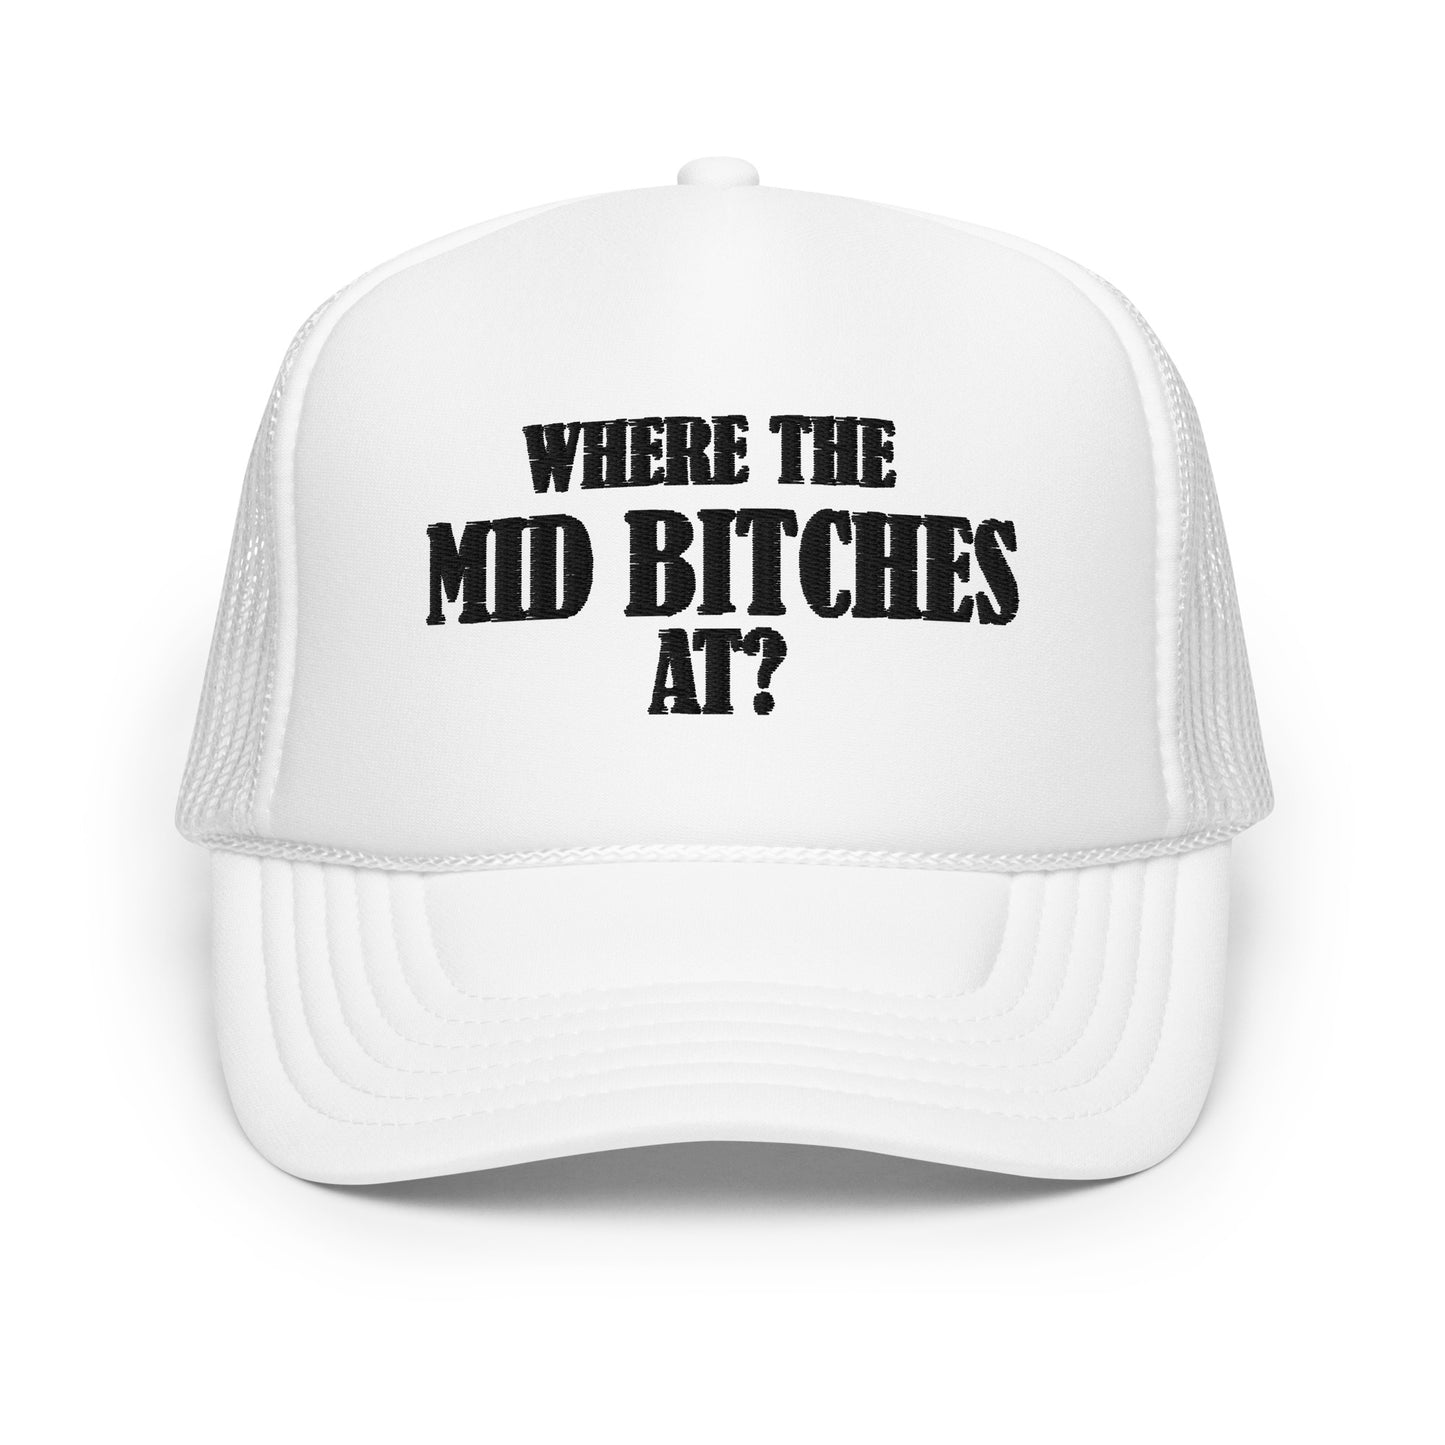 Mid Bitches Foam Trucker Hat